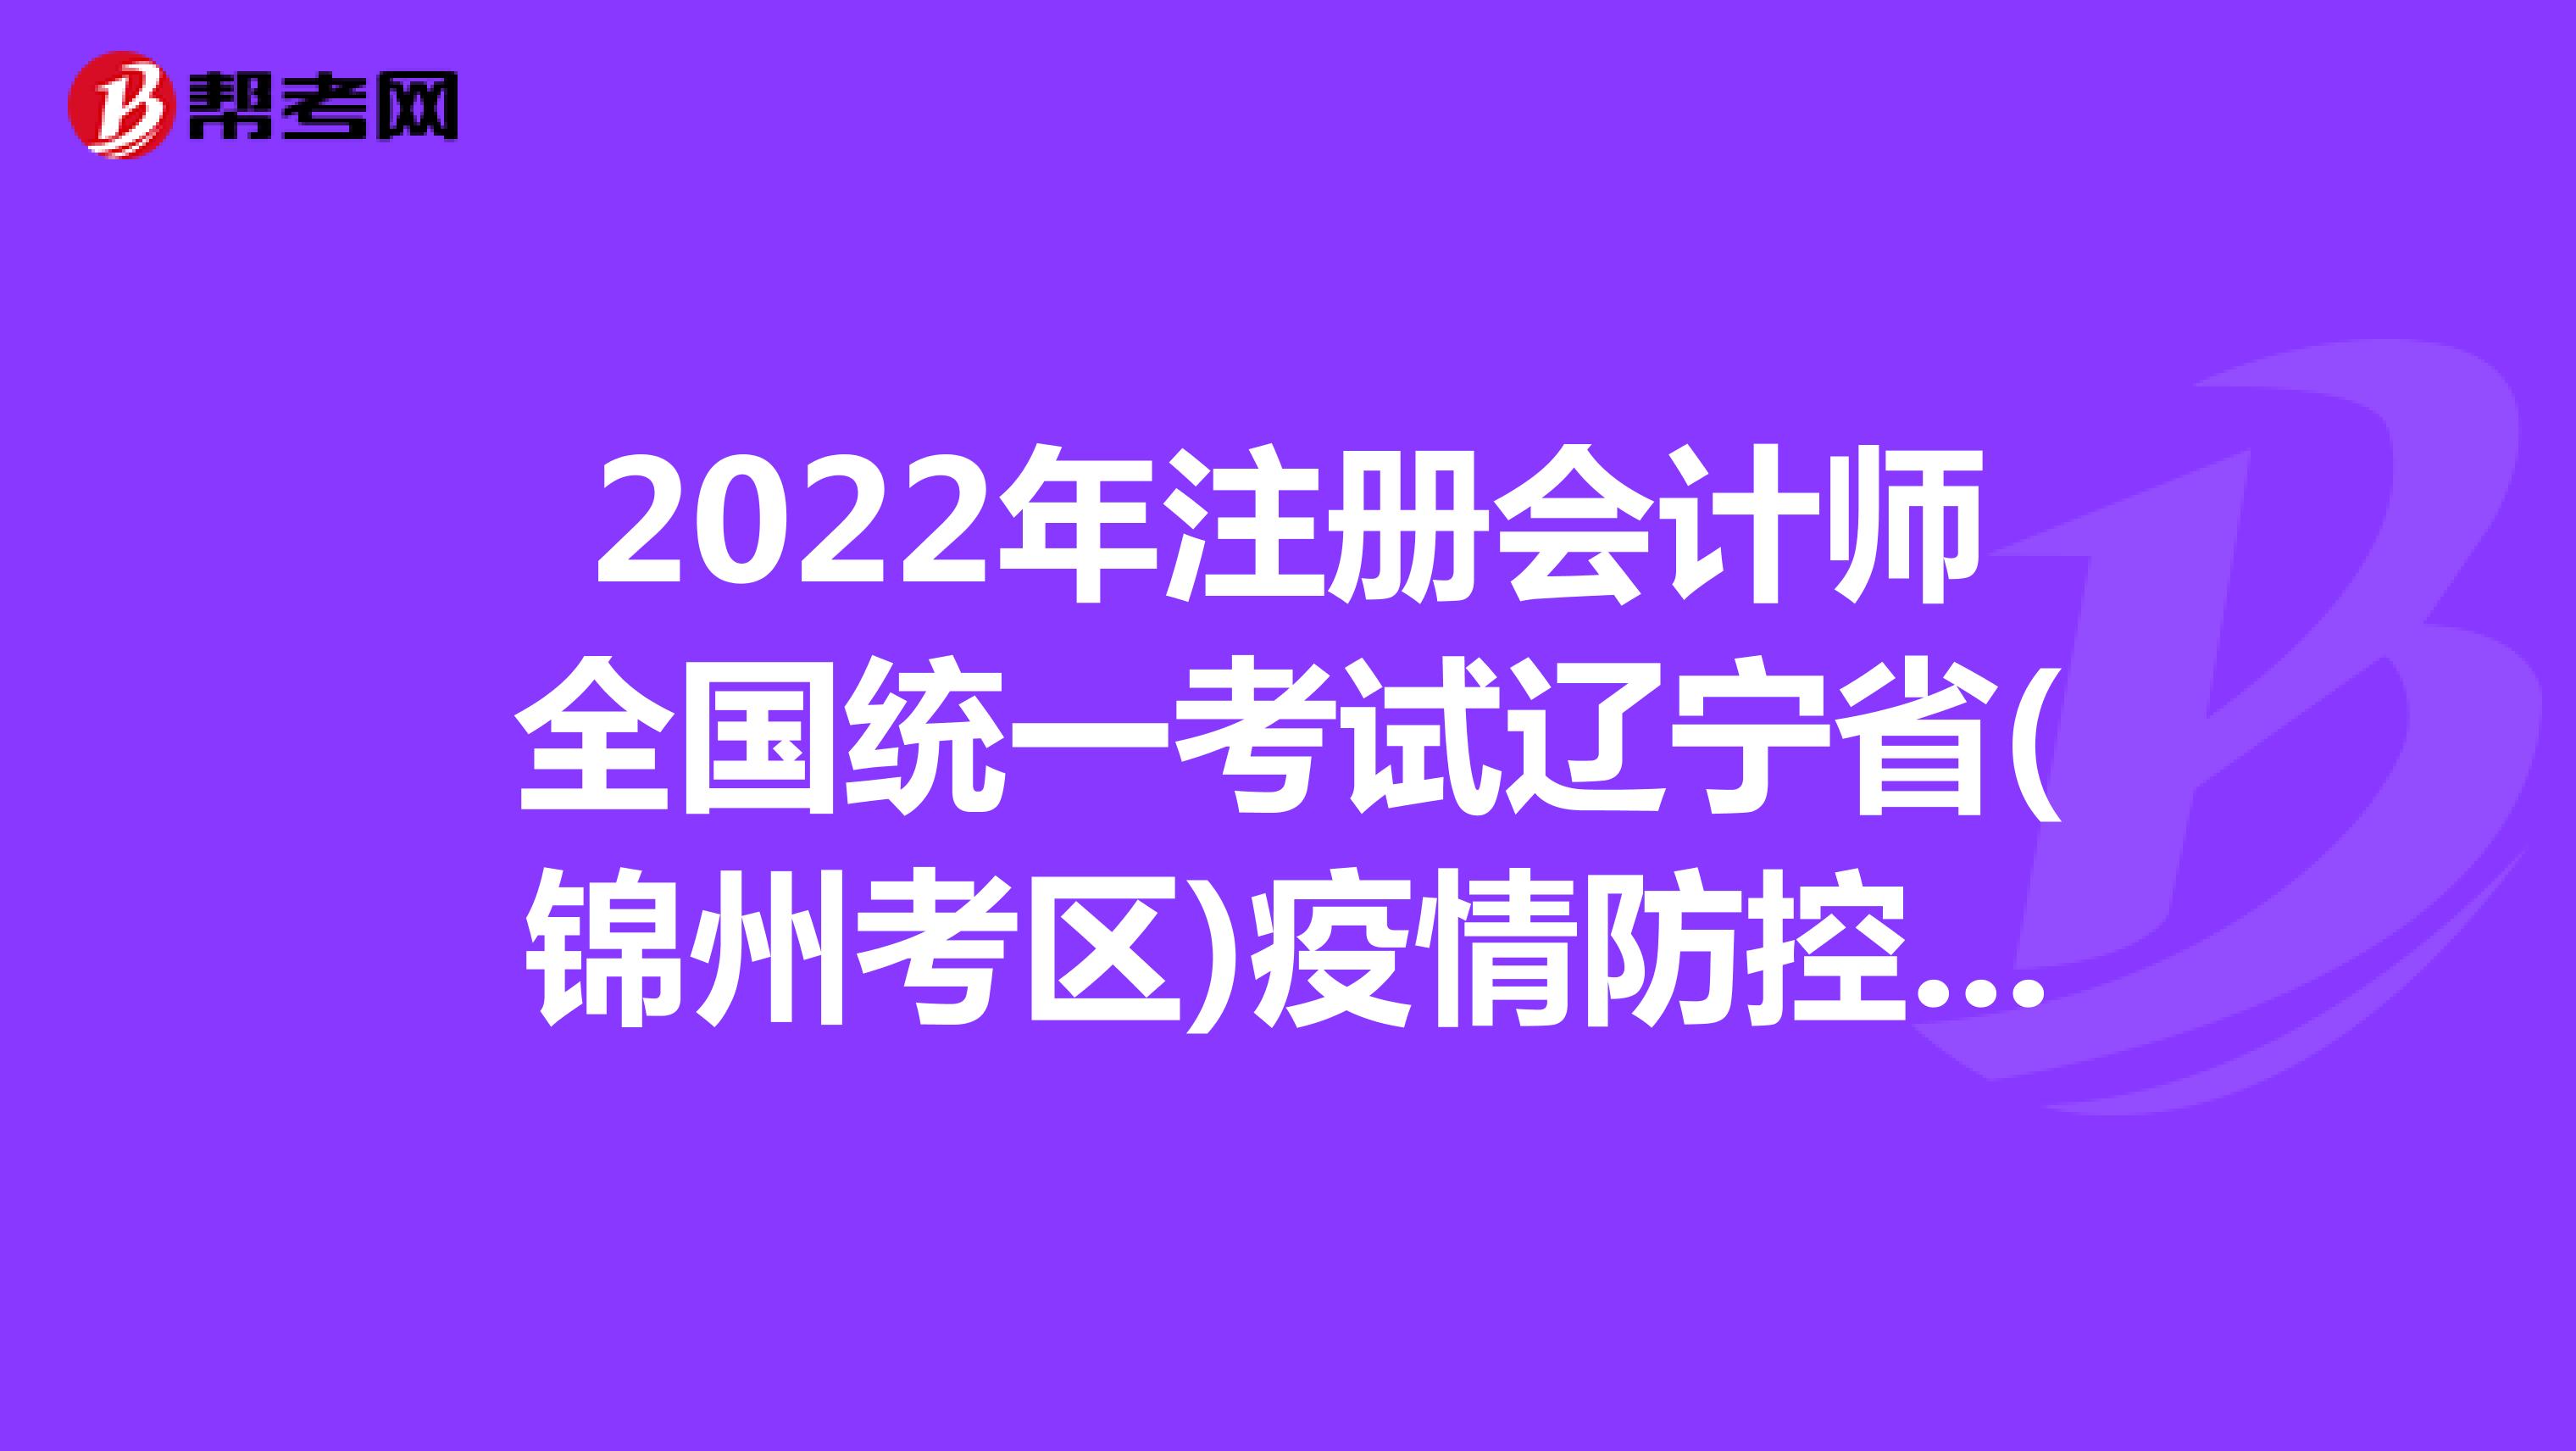 2022年注册会计师全国统一考试辽宁省(锦州考区)疫情防控考生须知